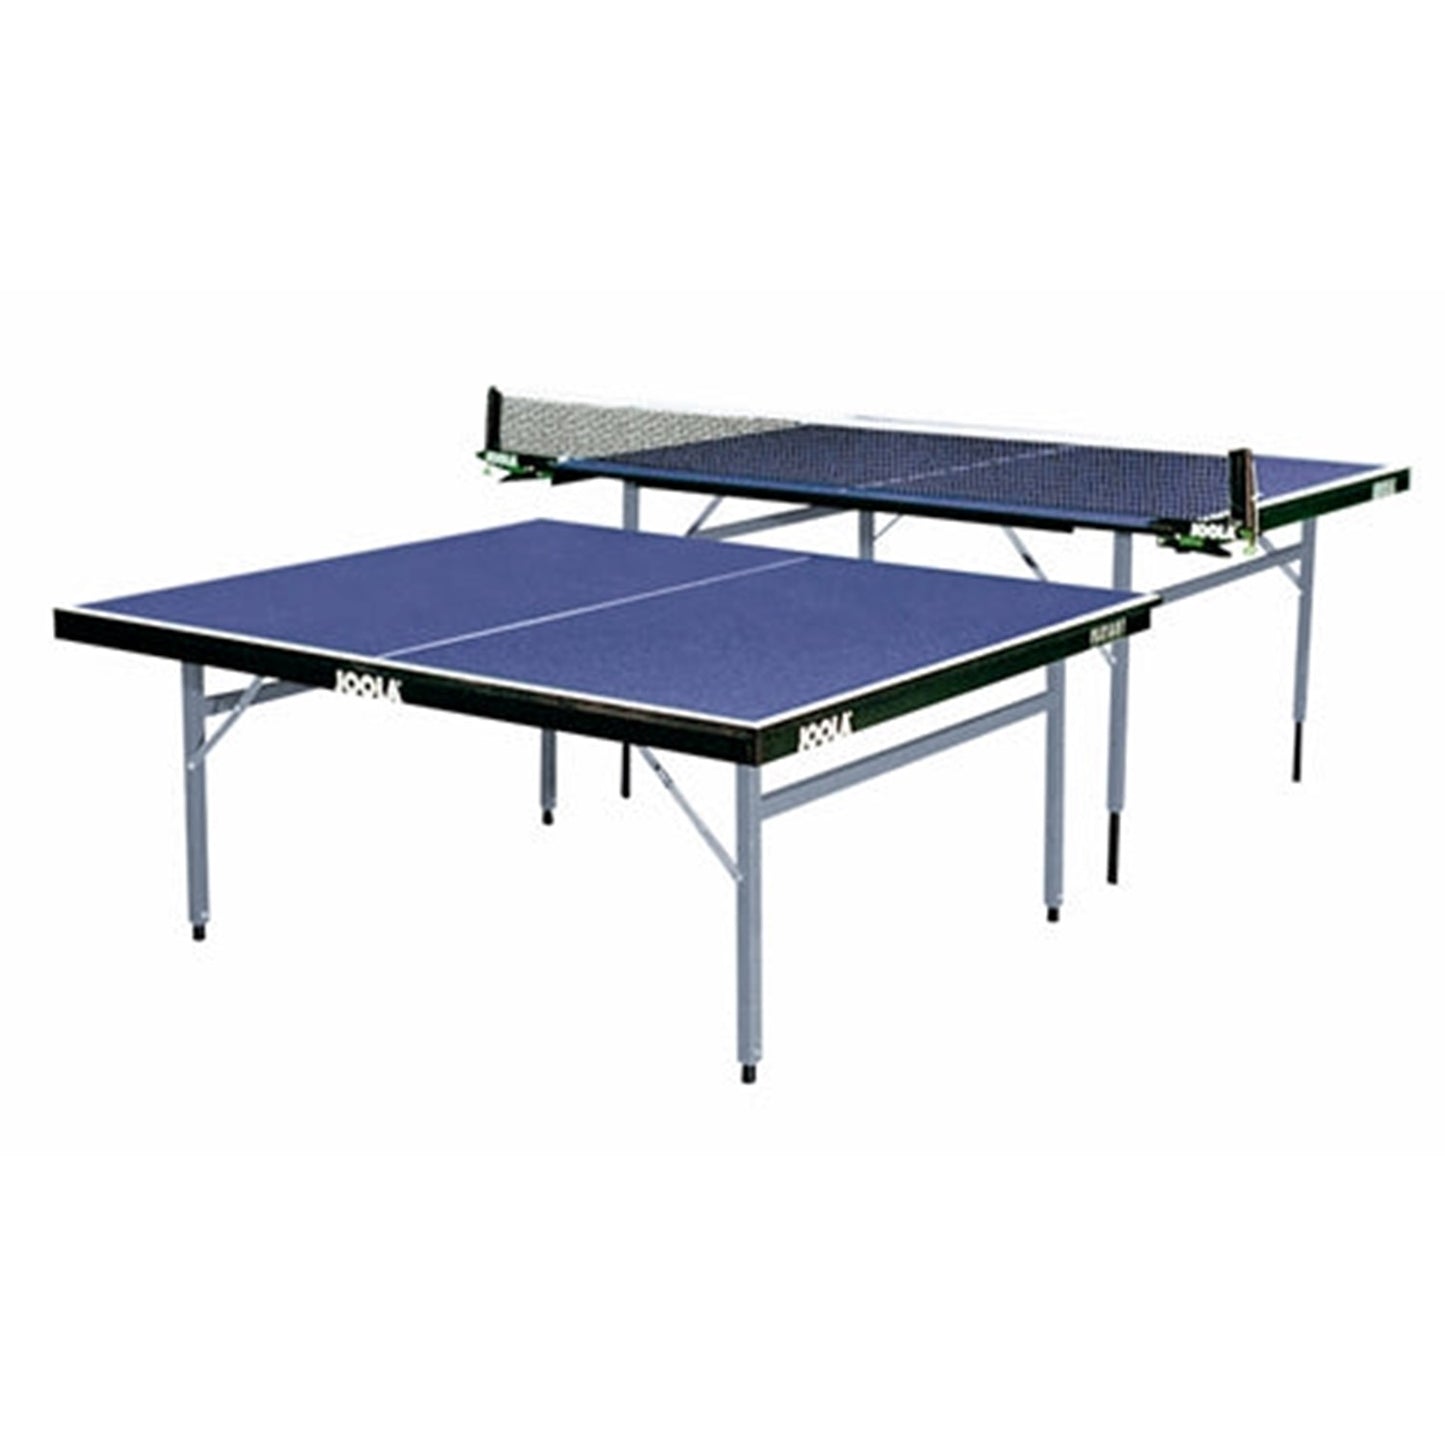 Joola Variant Adjustable height table tennis table >> Used